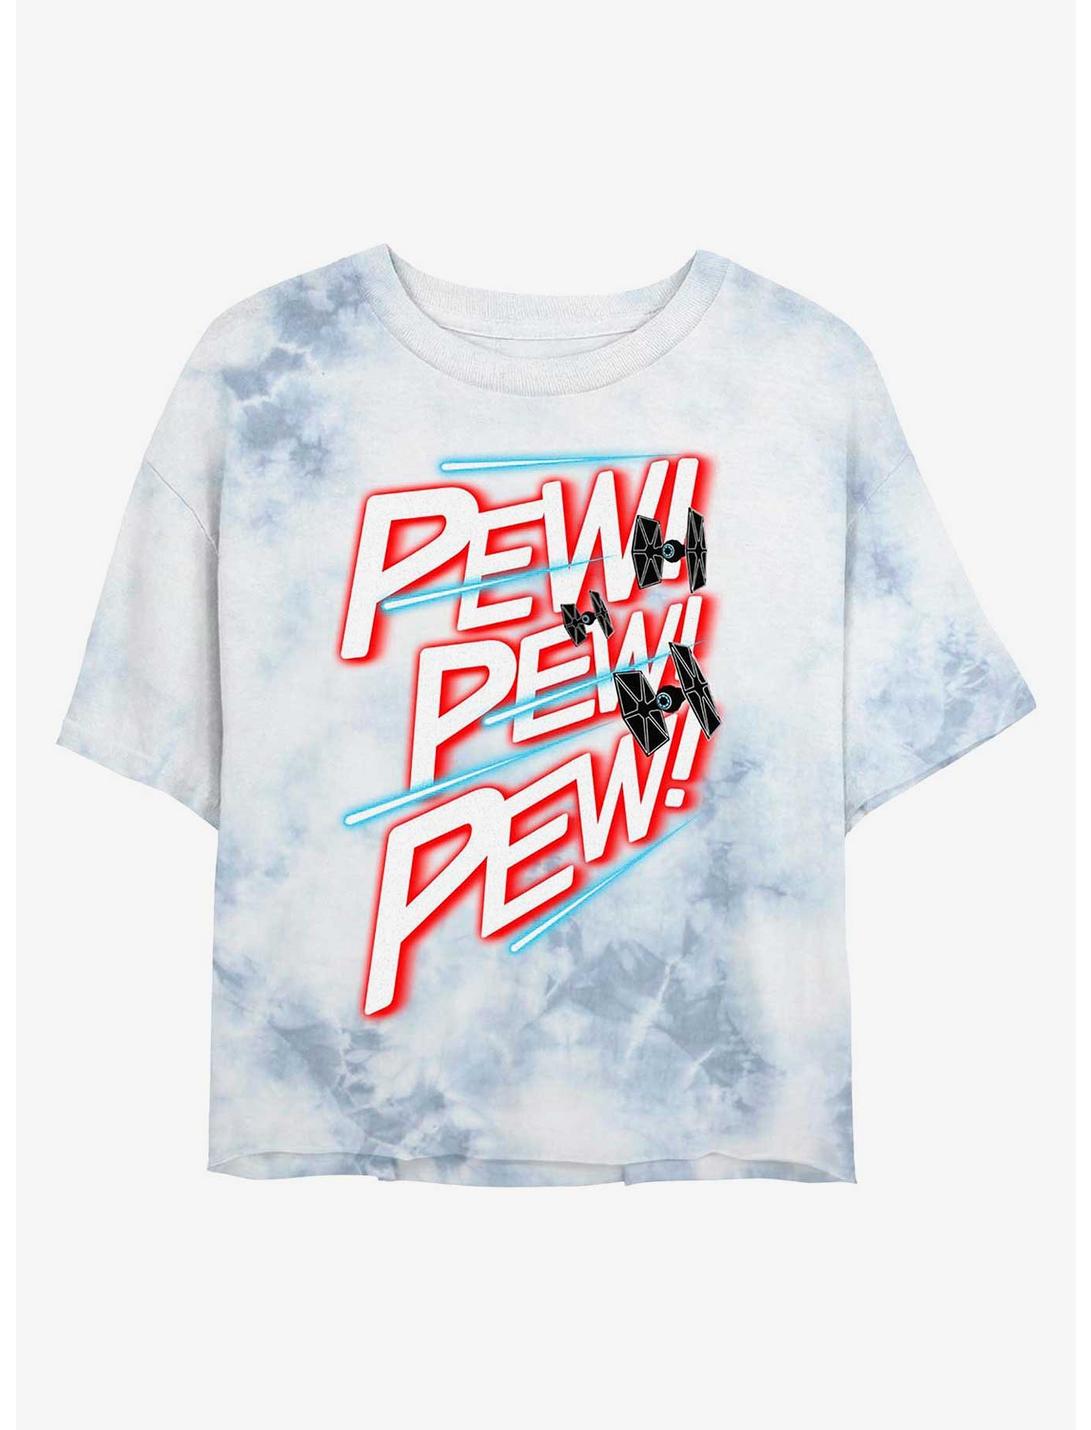 Star Wars Pew Pew Pew Tie-Dye Womens Crop T-Shirt, WHITEBLUE, hi-res